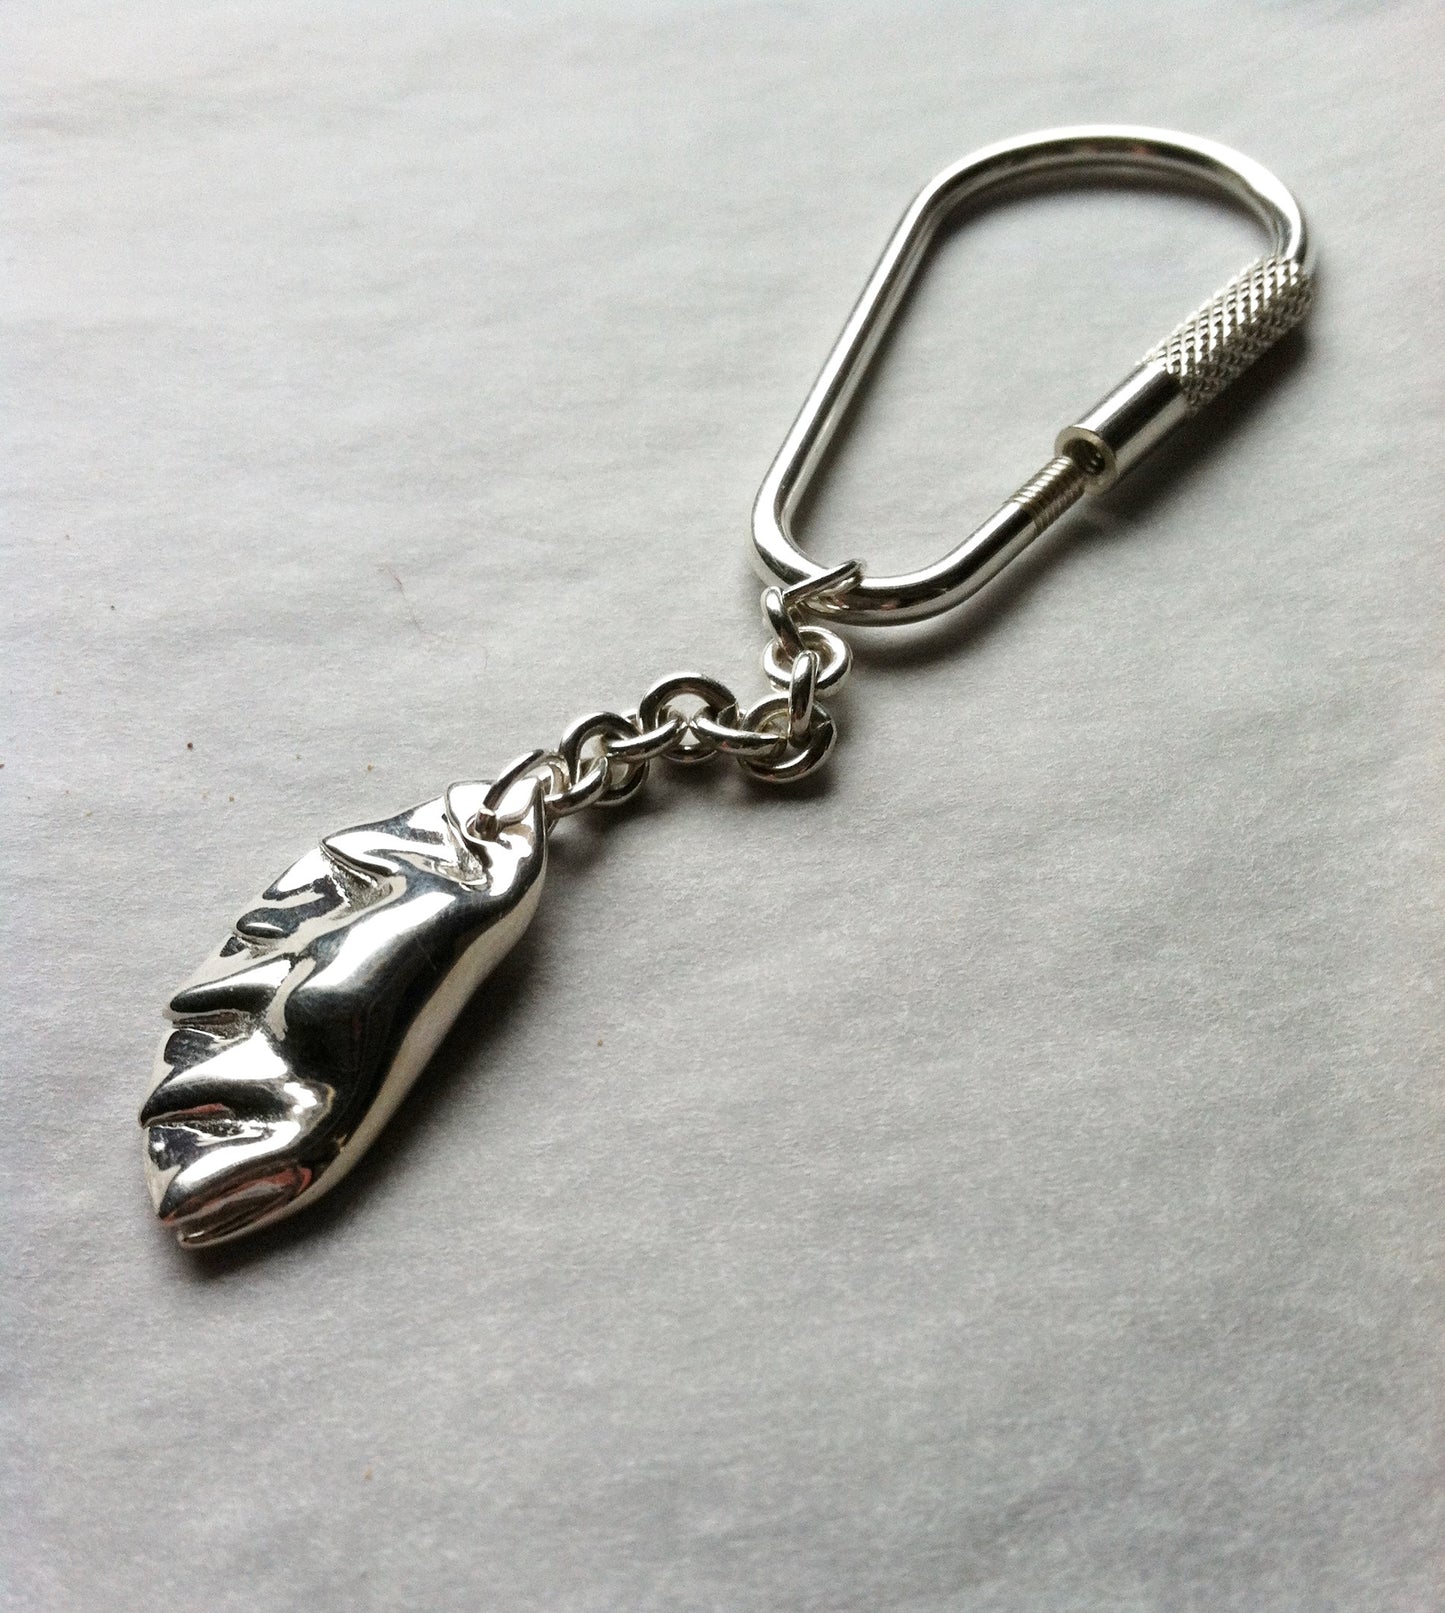 Potsticker Dumpling Charm Key Chain in Sterling Silver